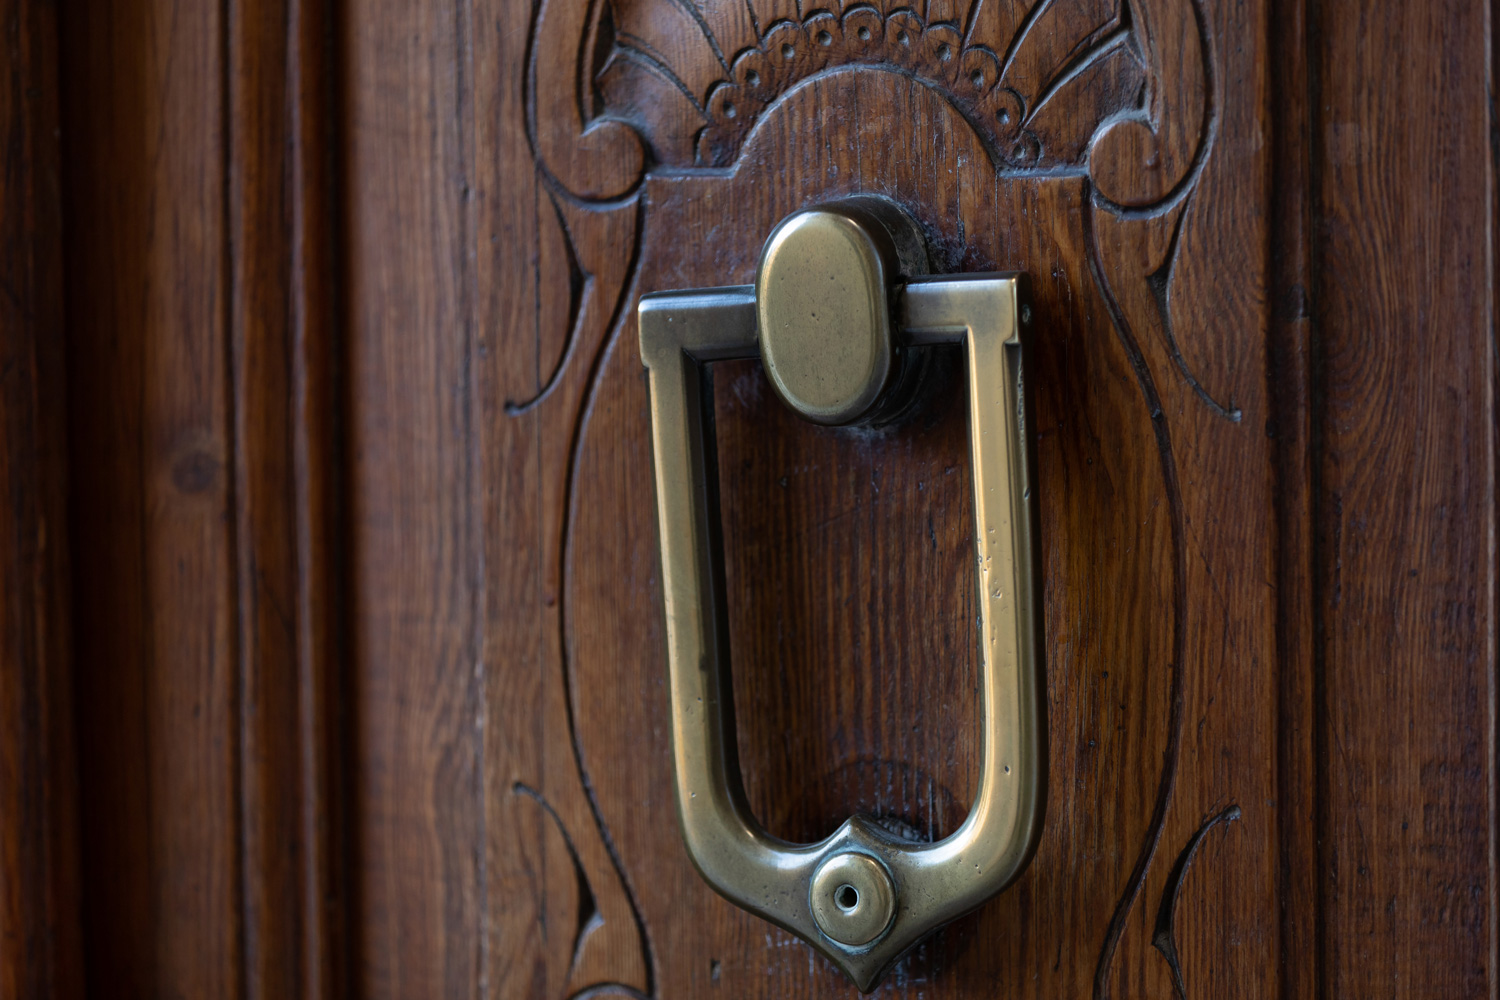 Wooden door with , stainless door knob or handle